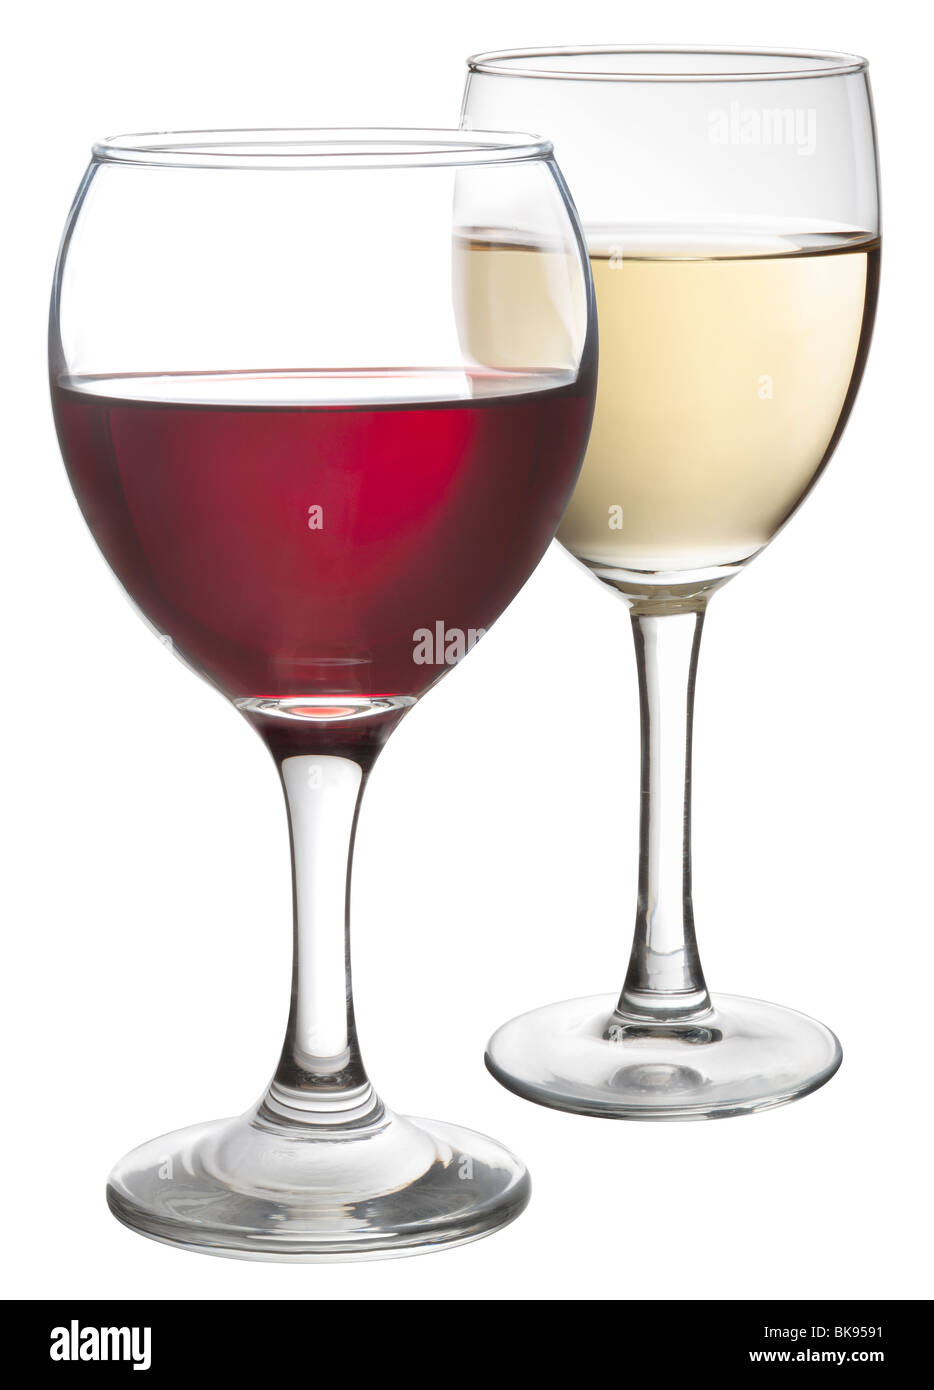 Verres de vin rouge et blanc Banque D'Images